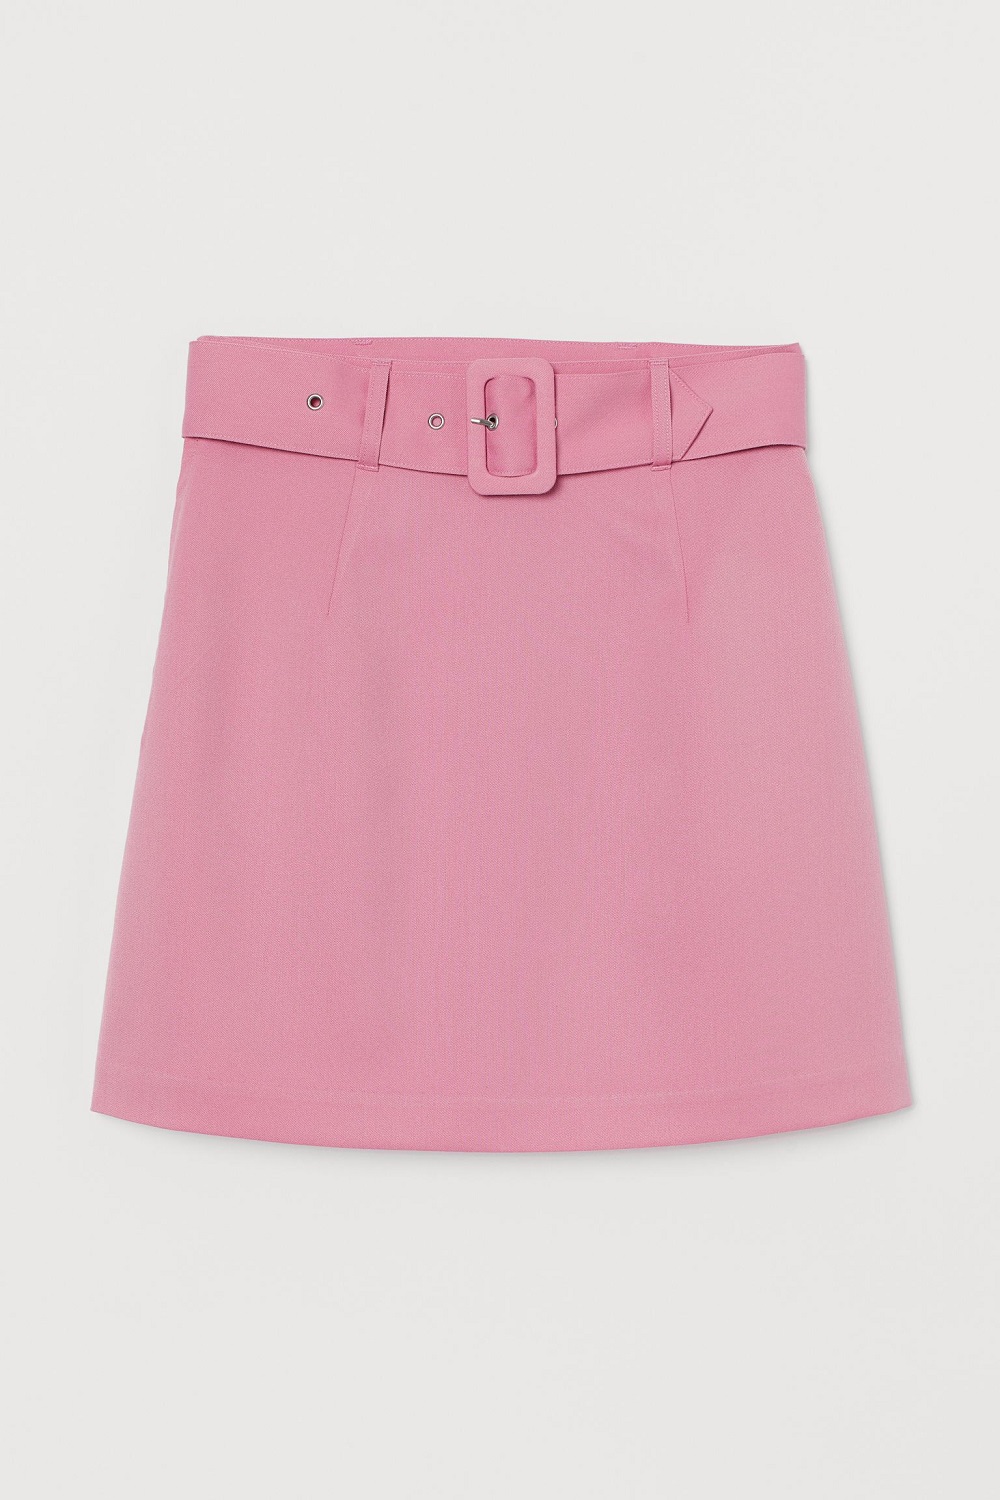 H&M efektna suknja proljeće/ljeto 2021. 